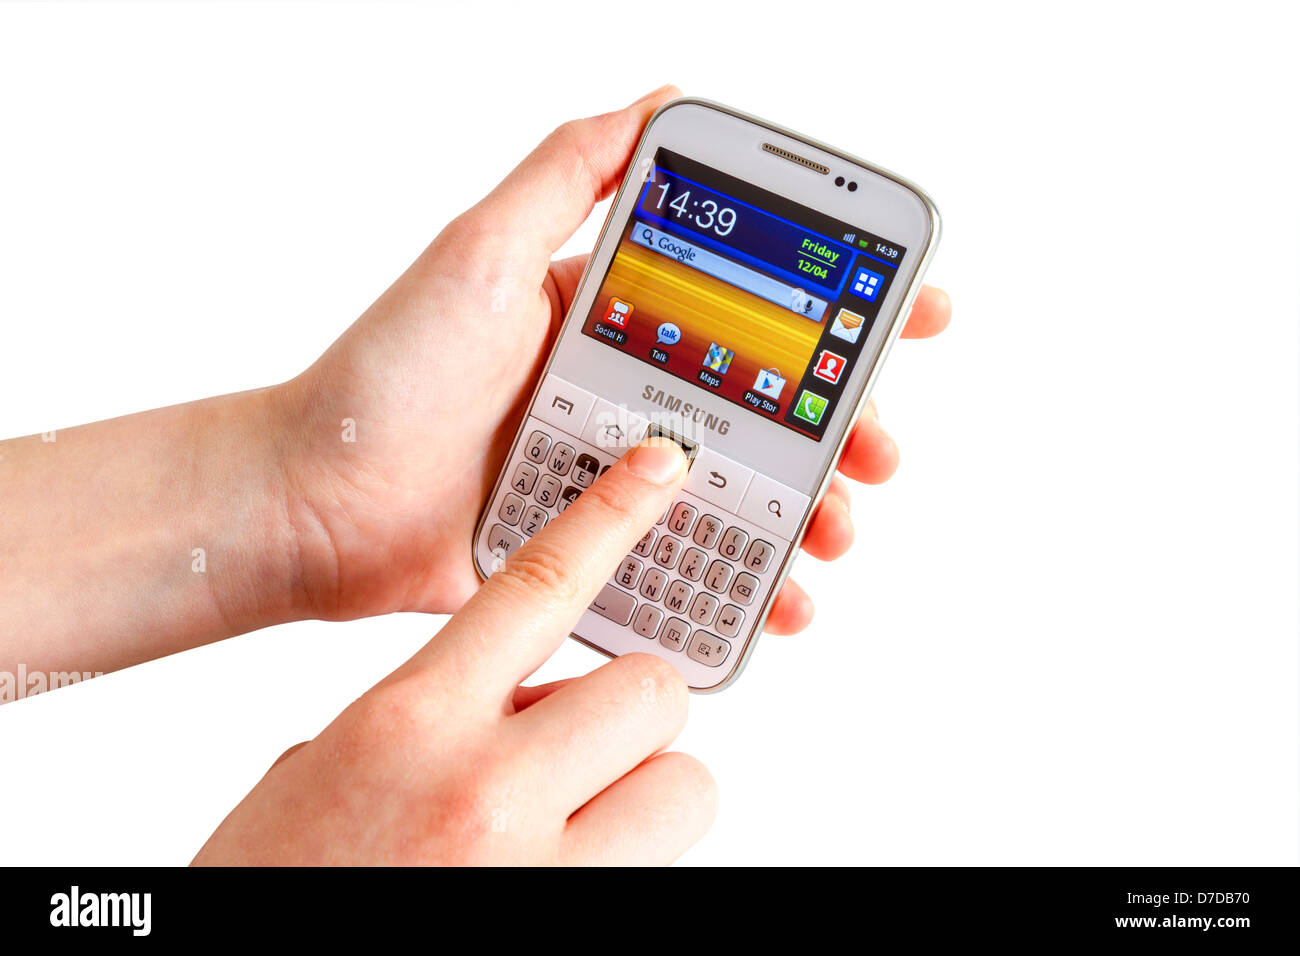 Samsung Galaxy Y Pro B5510 ist ein Android Smartphone mit QWERTZ-Tastatur Candybar. Stockfoto